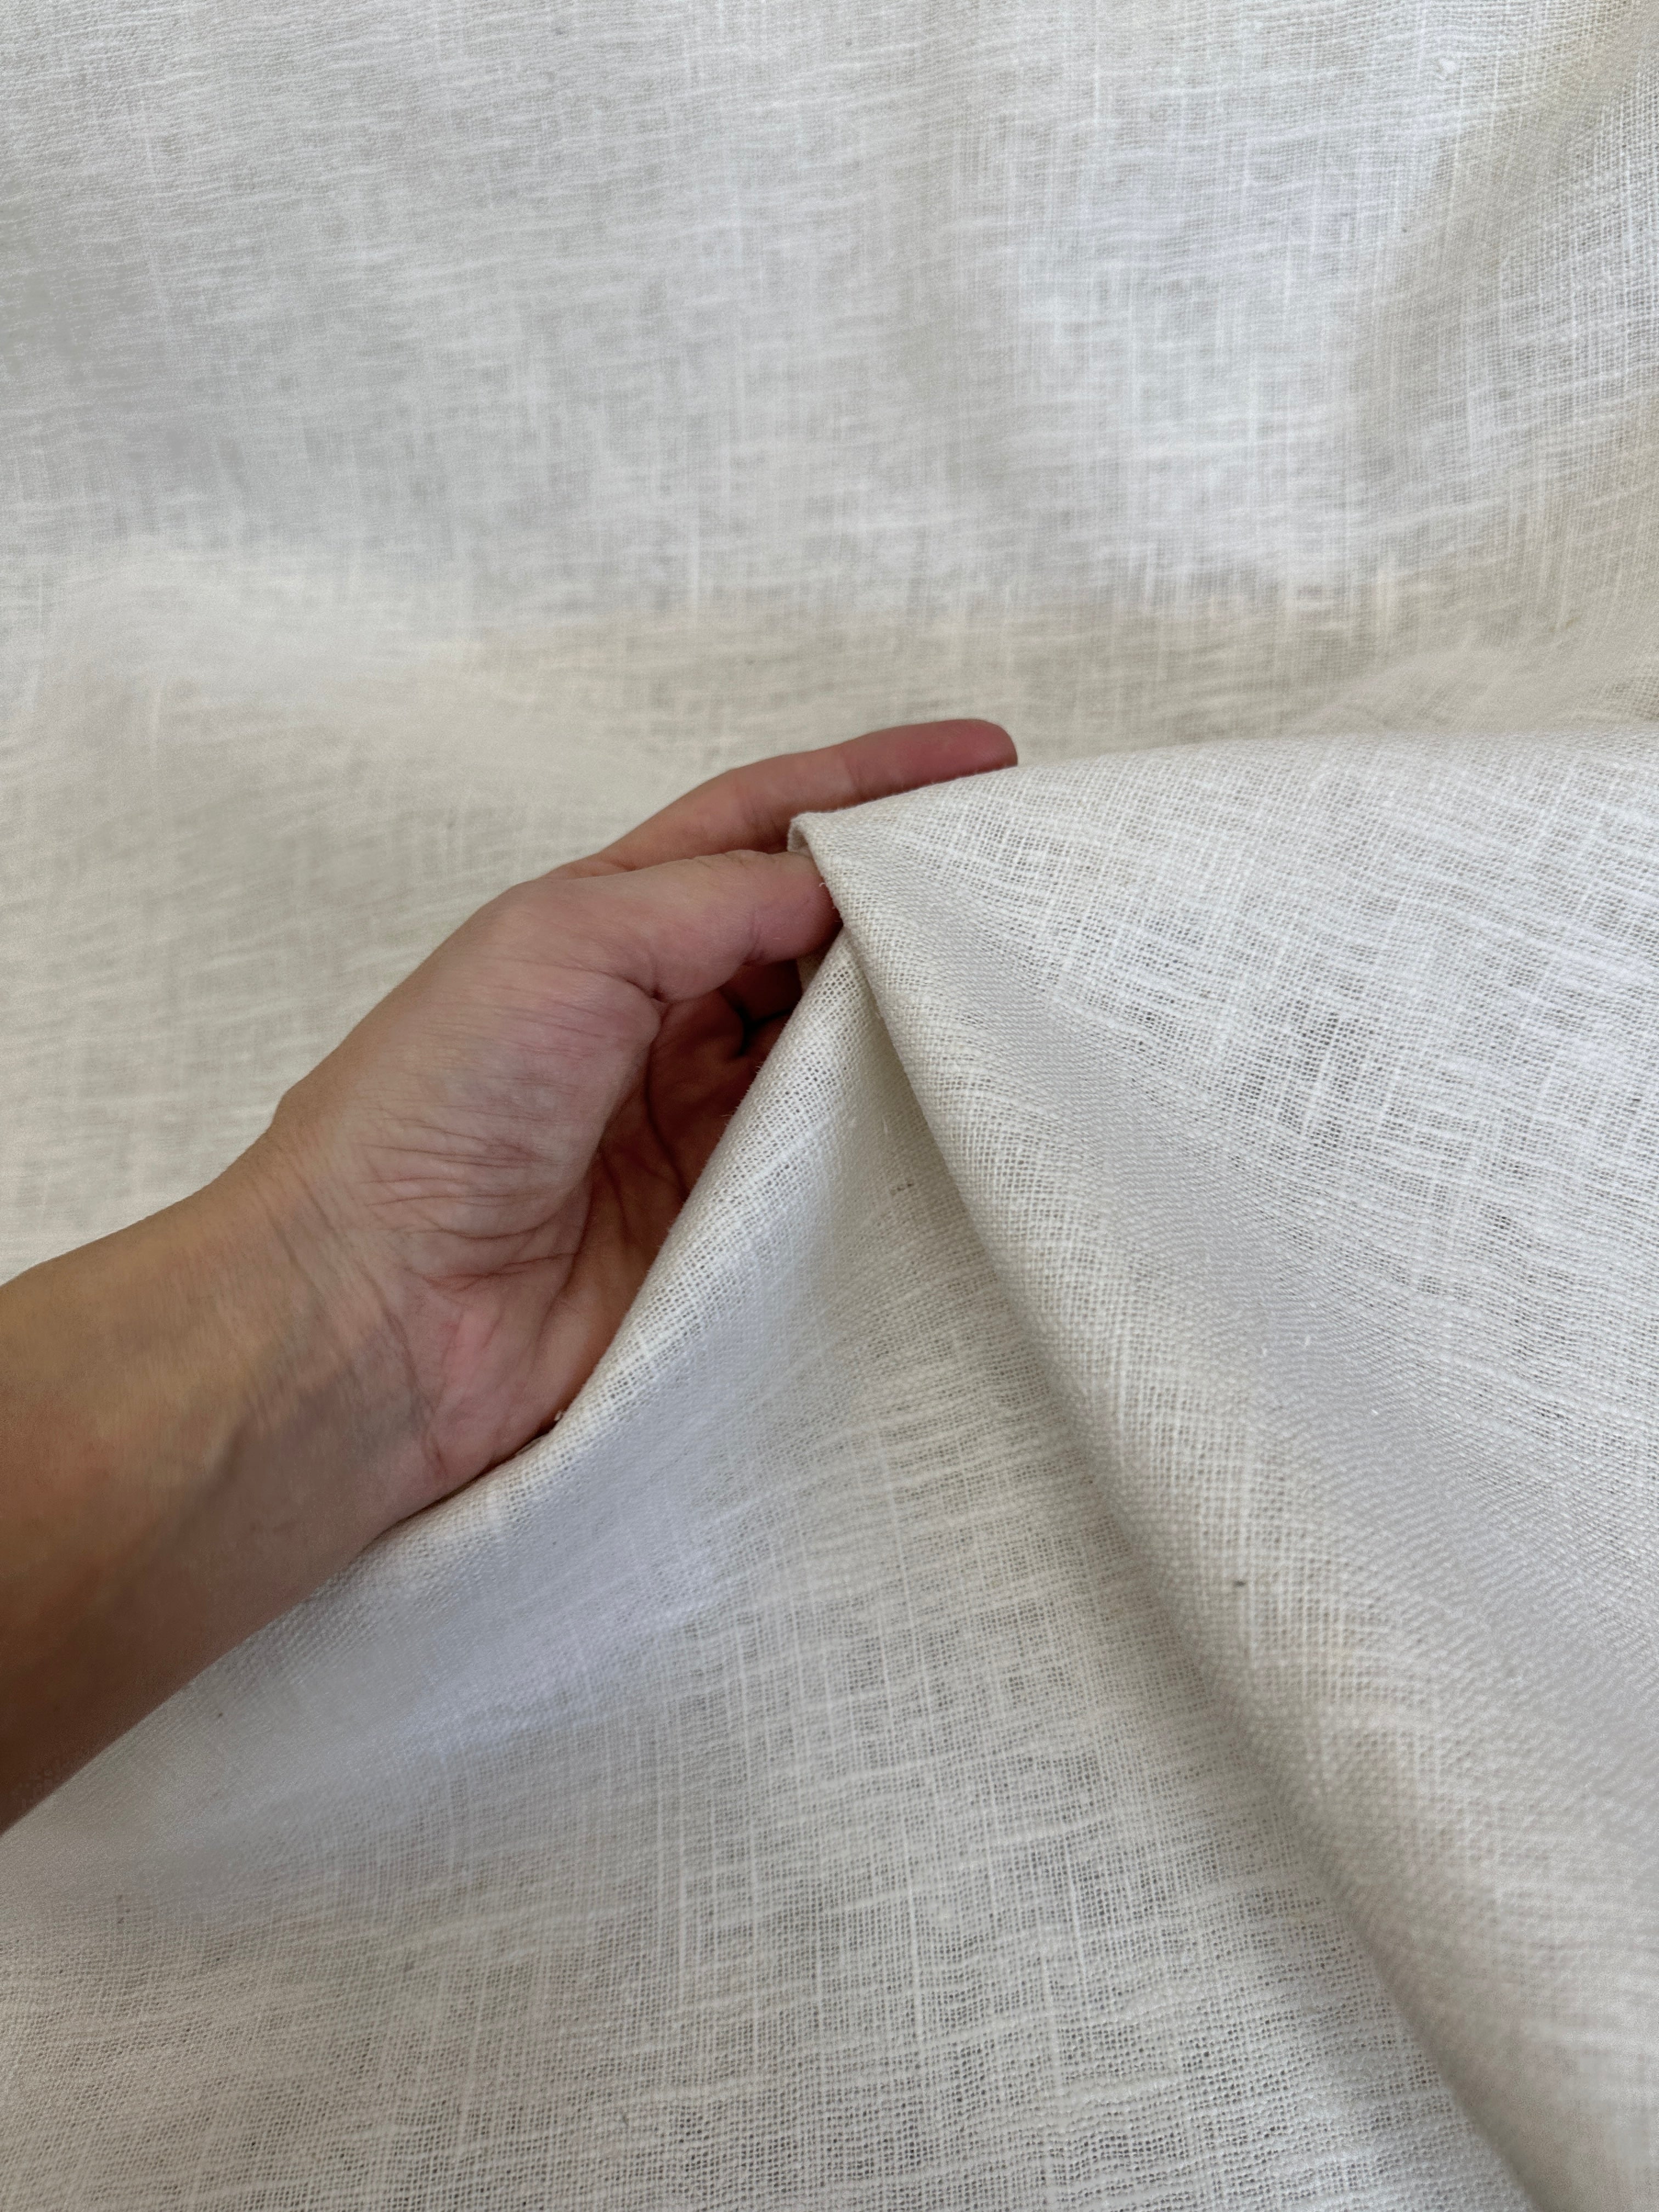 Eggshell Natural Linen, white linen, off white linen, textured linen, linen for woman, linen for shirts, linen for chair cover, premium linen, linen in low price, kikitextile linen